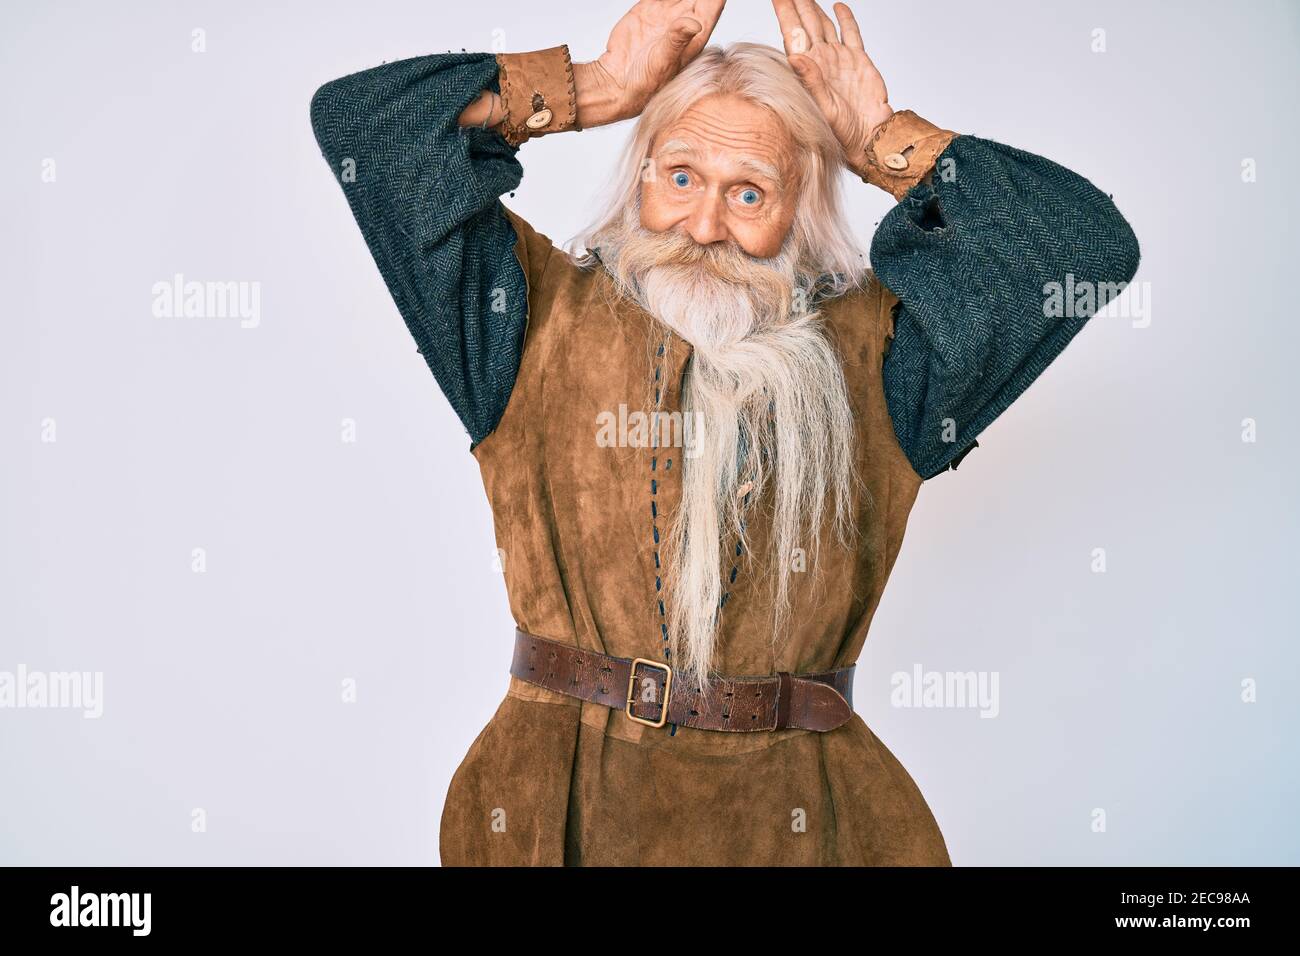 Viejo anciano con pelo gris y barba larga disfraz tradicional vikingo  haciendo el gesto de las orejas de conejito con las palmas de las manos  parece cínico y escéptico Fotografía de stock -